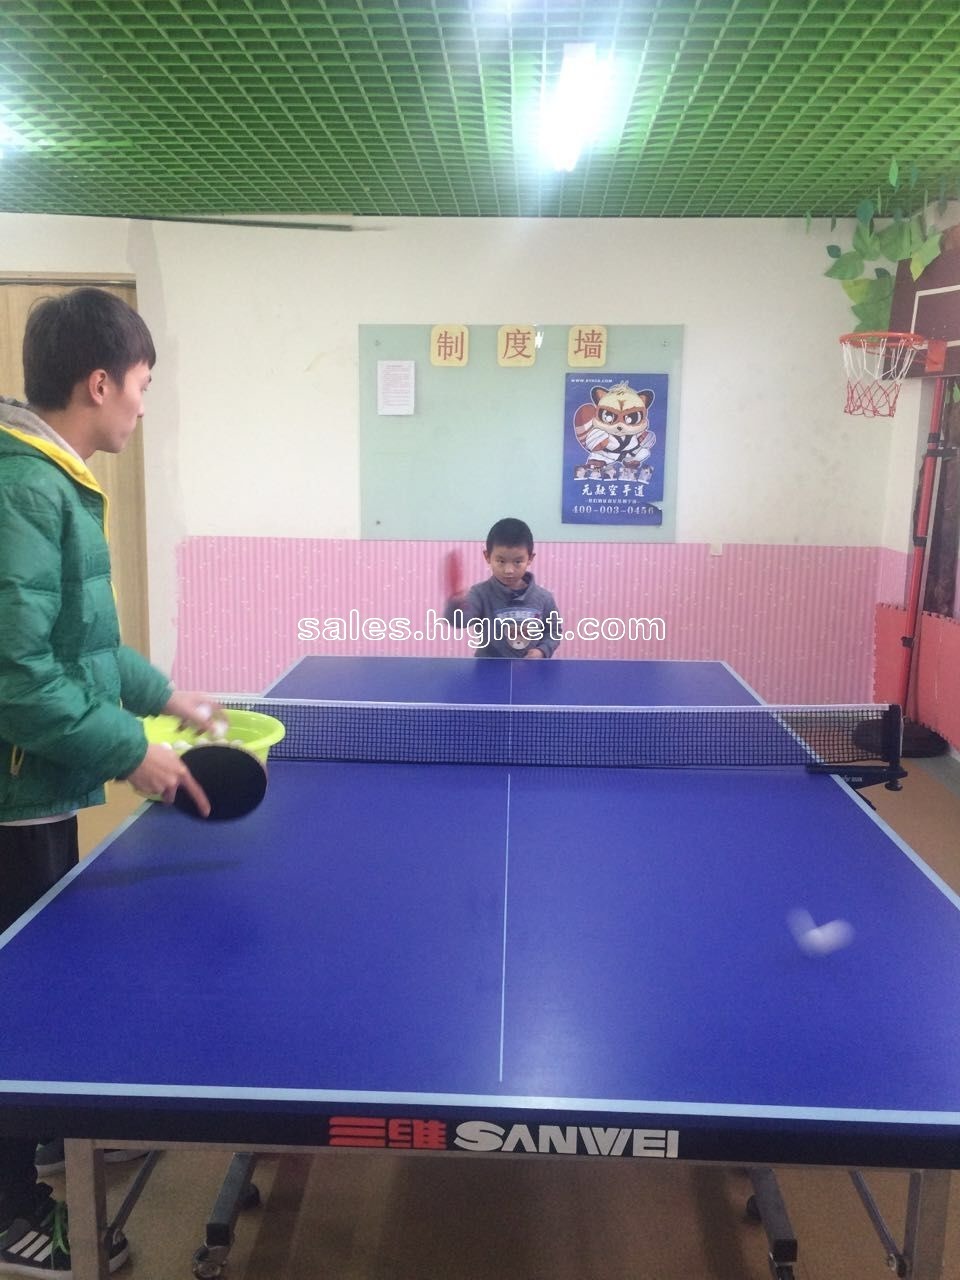 2016冰羽俱乐部暑假少儿乒乓球培训班(长期招